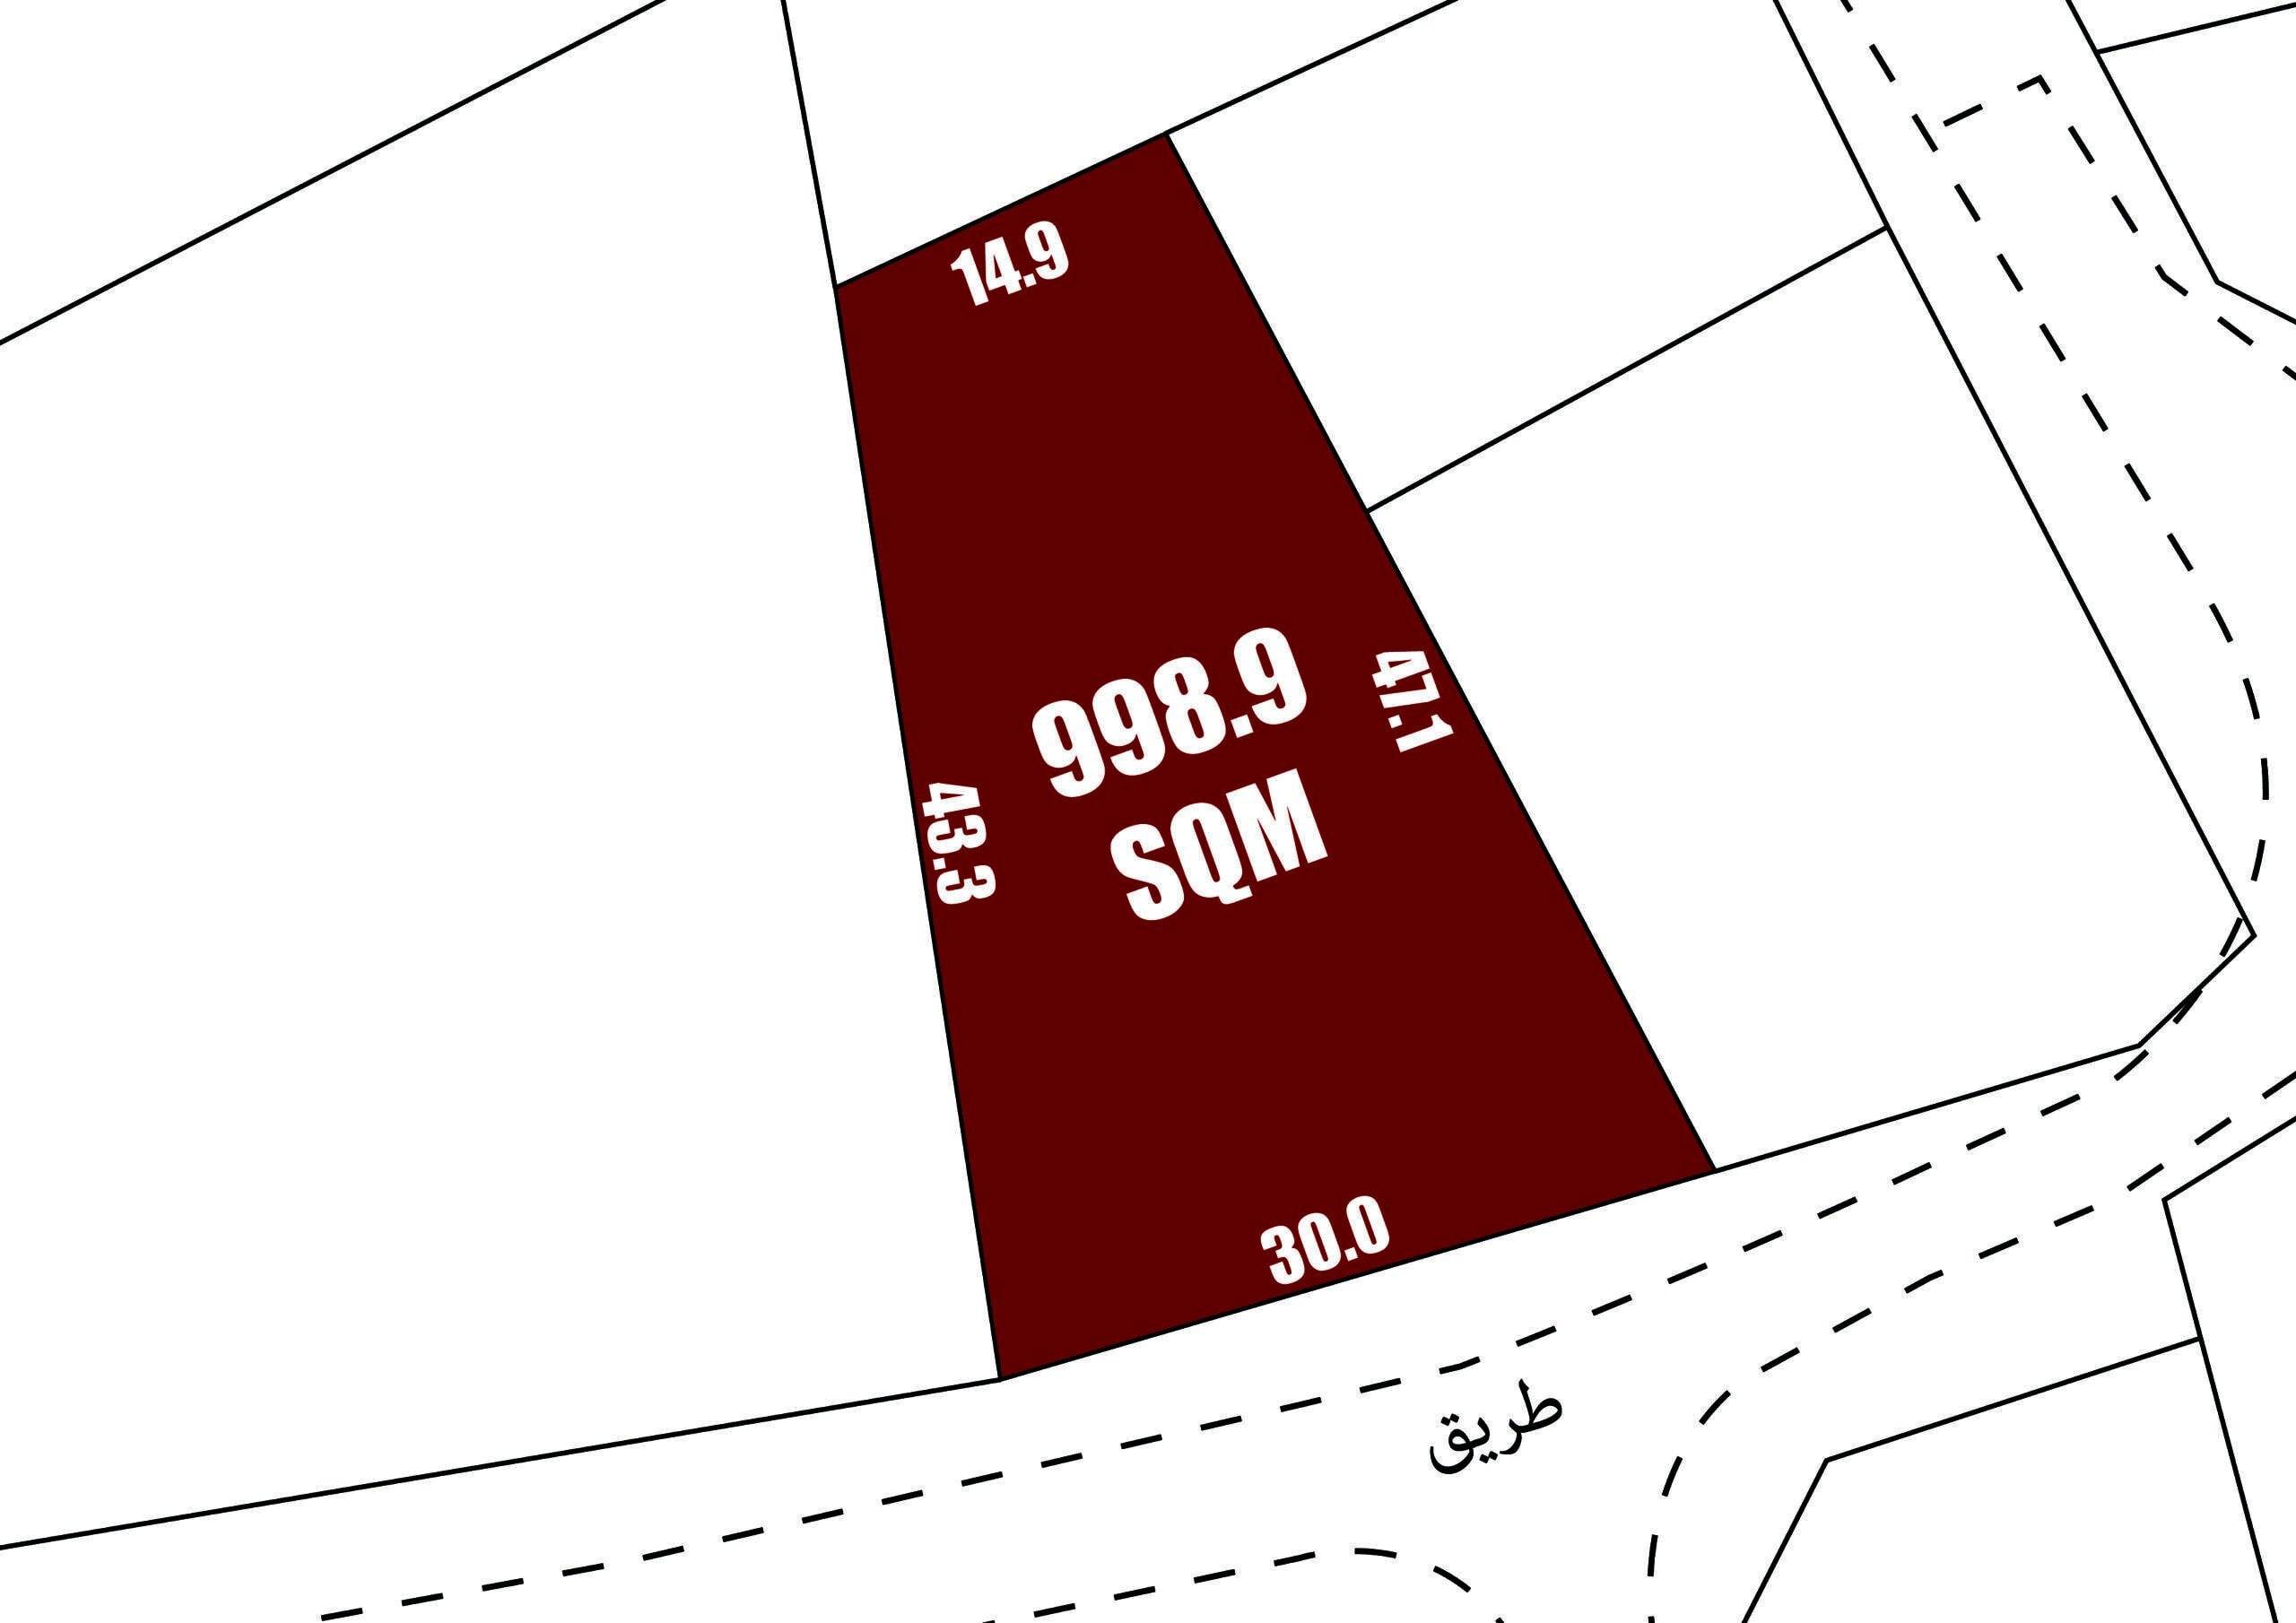 القسم الأحمر على الخريطة يحمل علامة "998.9 متر مربع" مع وجود قياسات عند الحواف، ويظهر تخطيط عقار سند مع الكتابة العربية في أسفل اليمين.